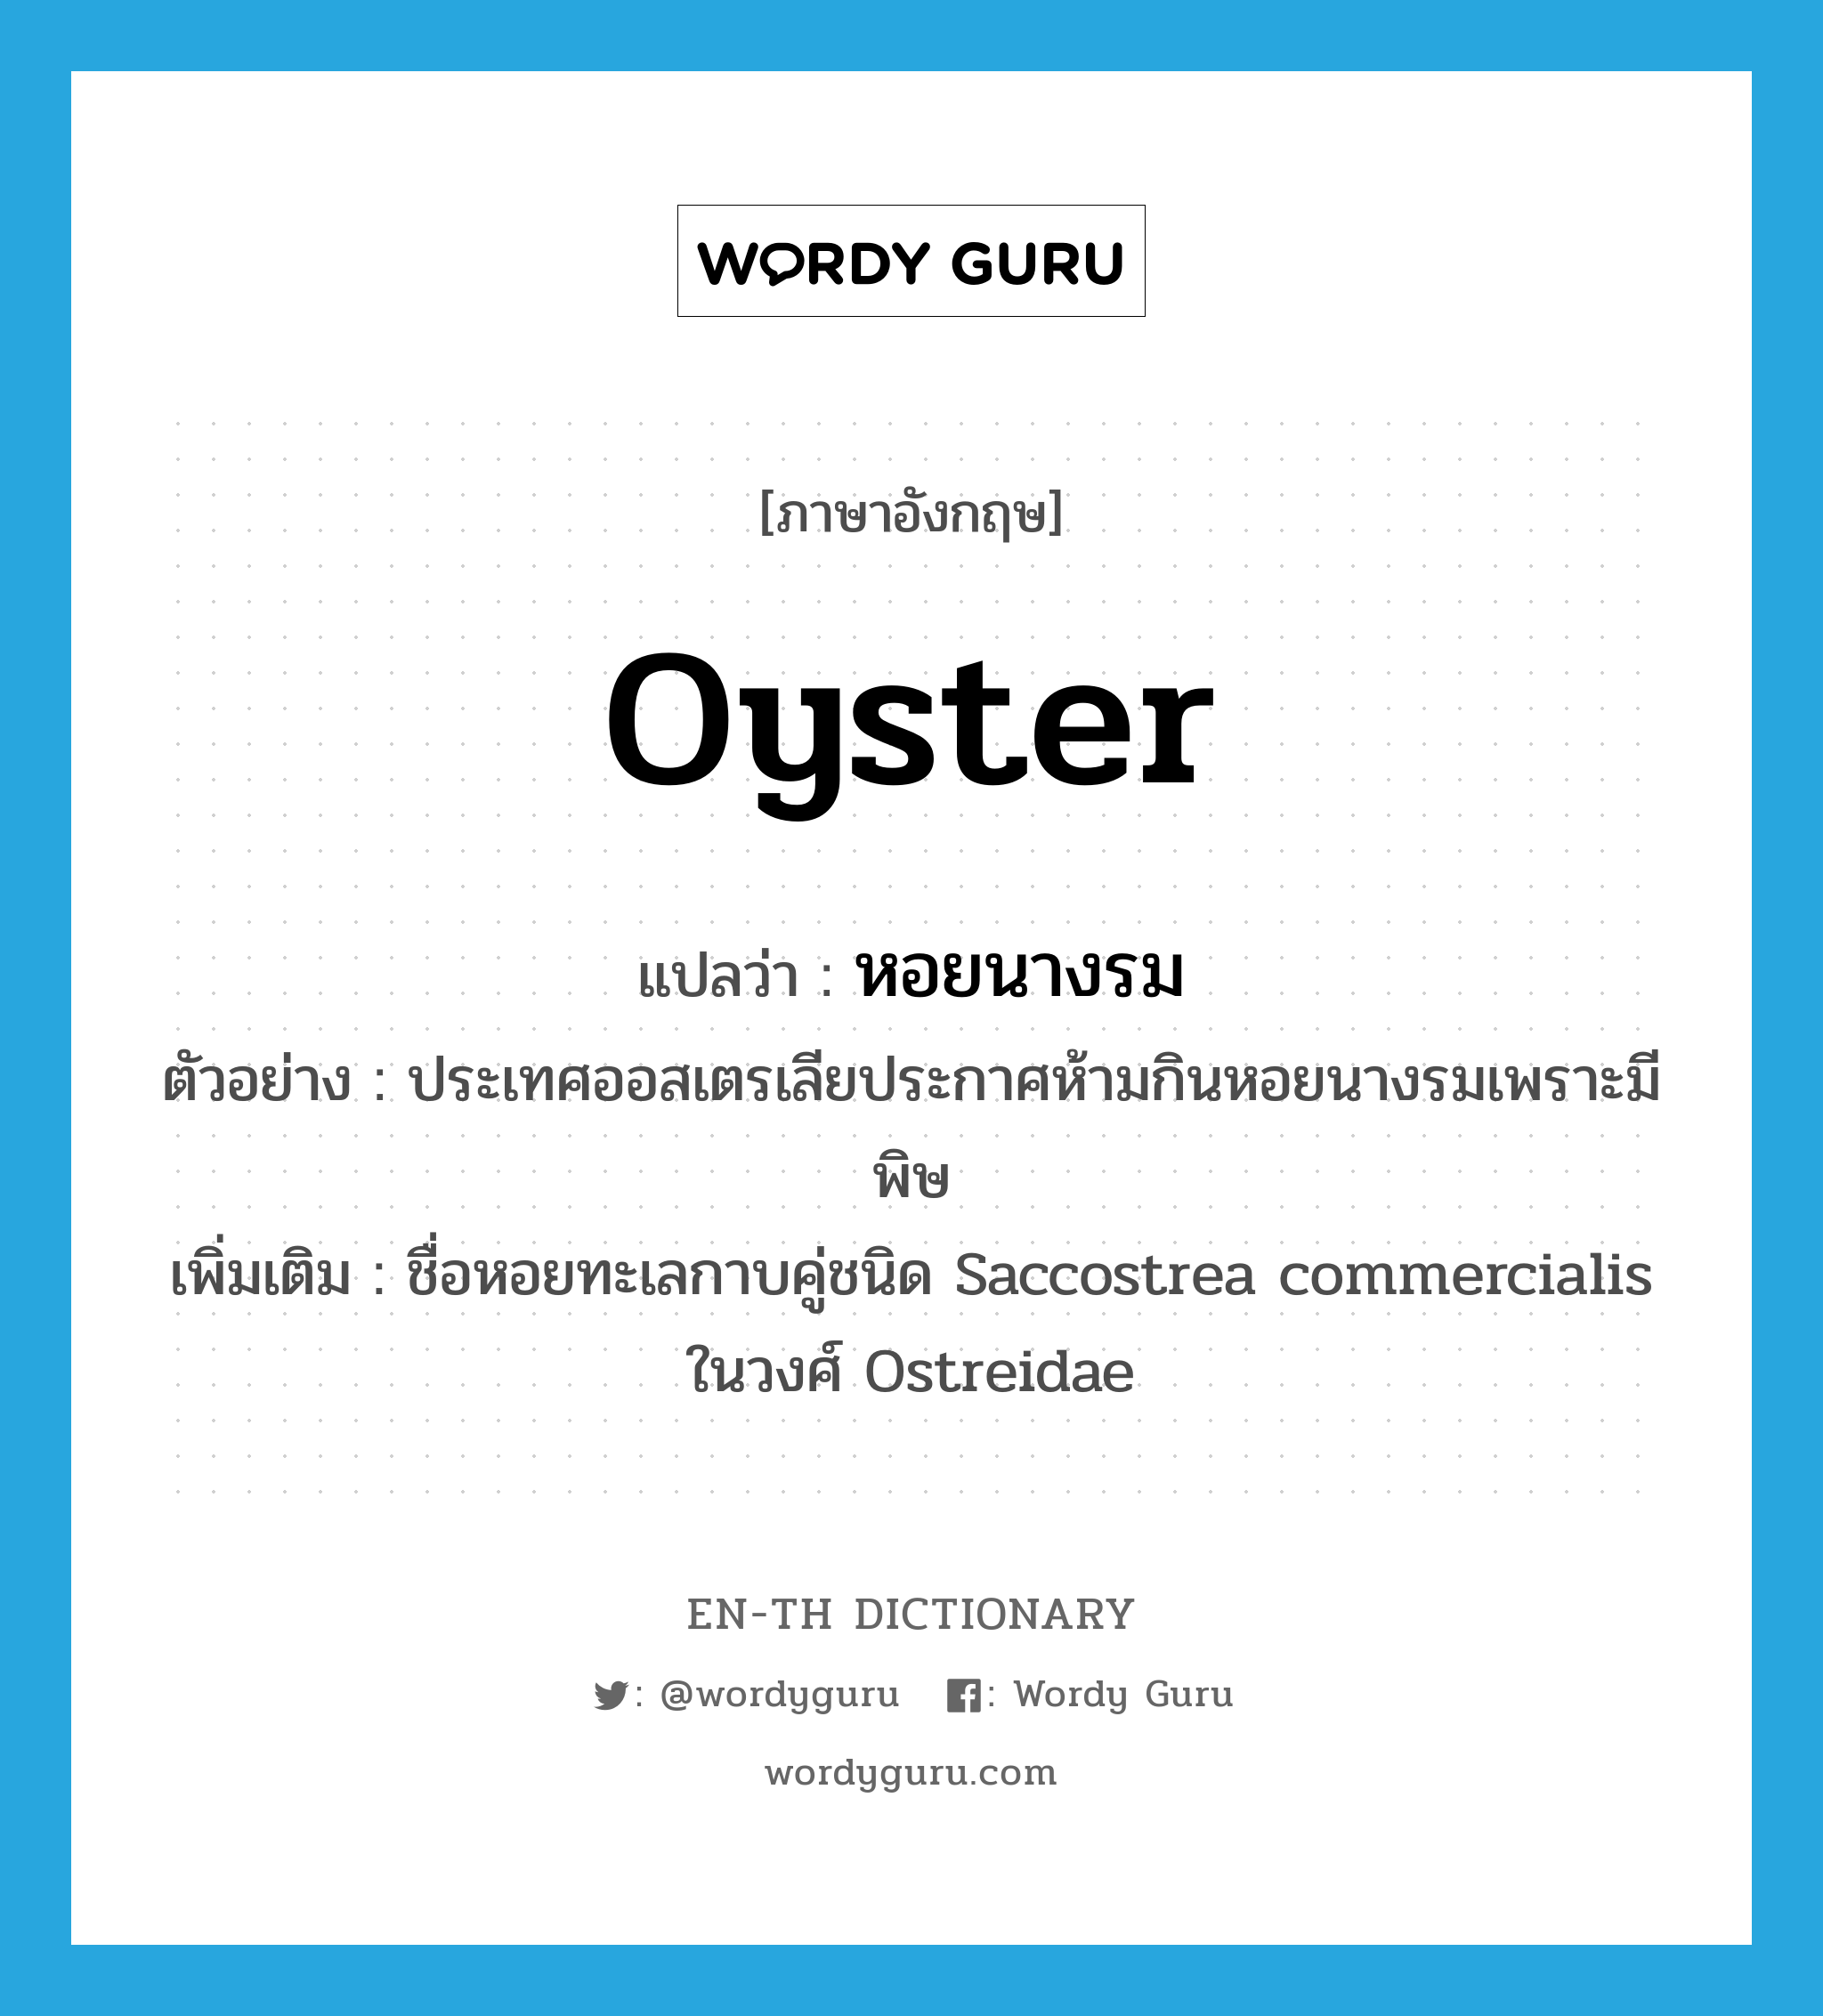 oyster แปลว่า?, คำศัพท์ภาษาอังกฤษ oyster แปลว่า หอยนางรม ประเภท N ตัวอย่าง ประเทศออสเตรเลียประกาศห้ามกินหอยนางรมเพราะมีพิษ เพิ่มเติม ชื่อหอยทะเลกาบคู่ชนิด Saccostrea commercialis ในวงศ์ Ostreidae หมวด N